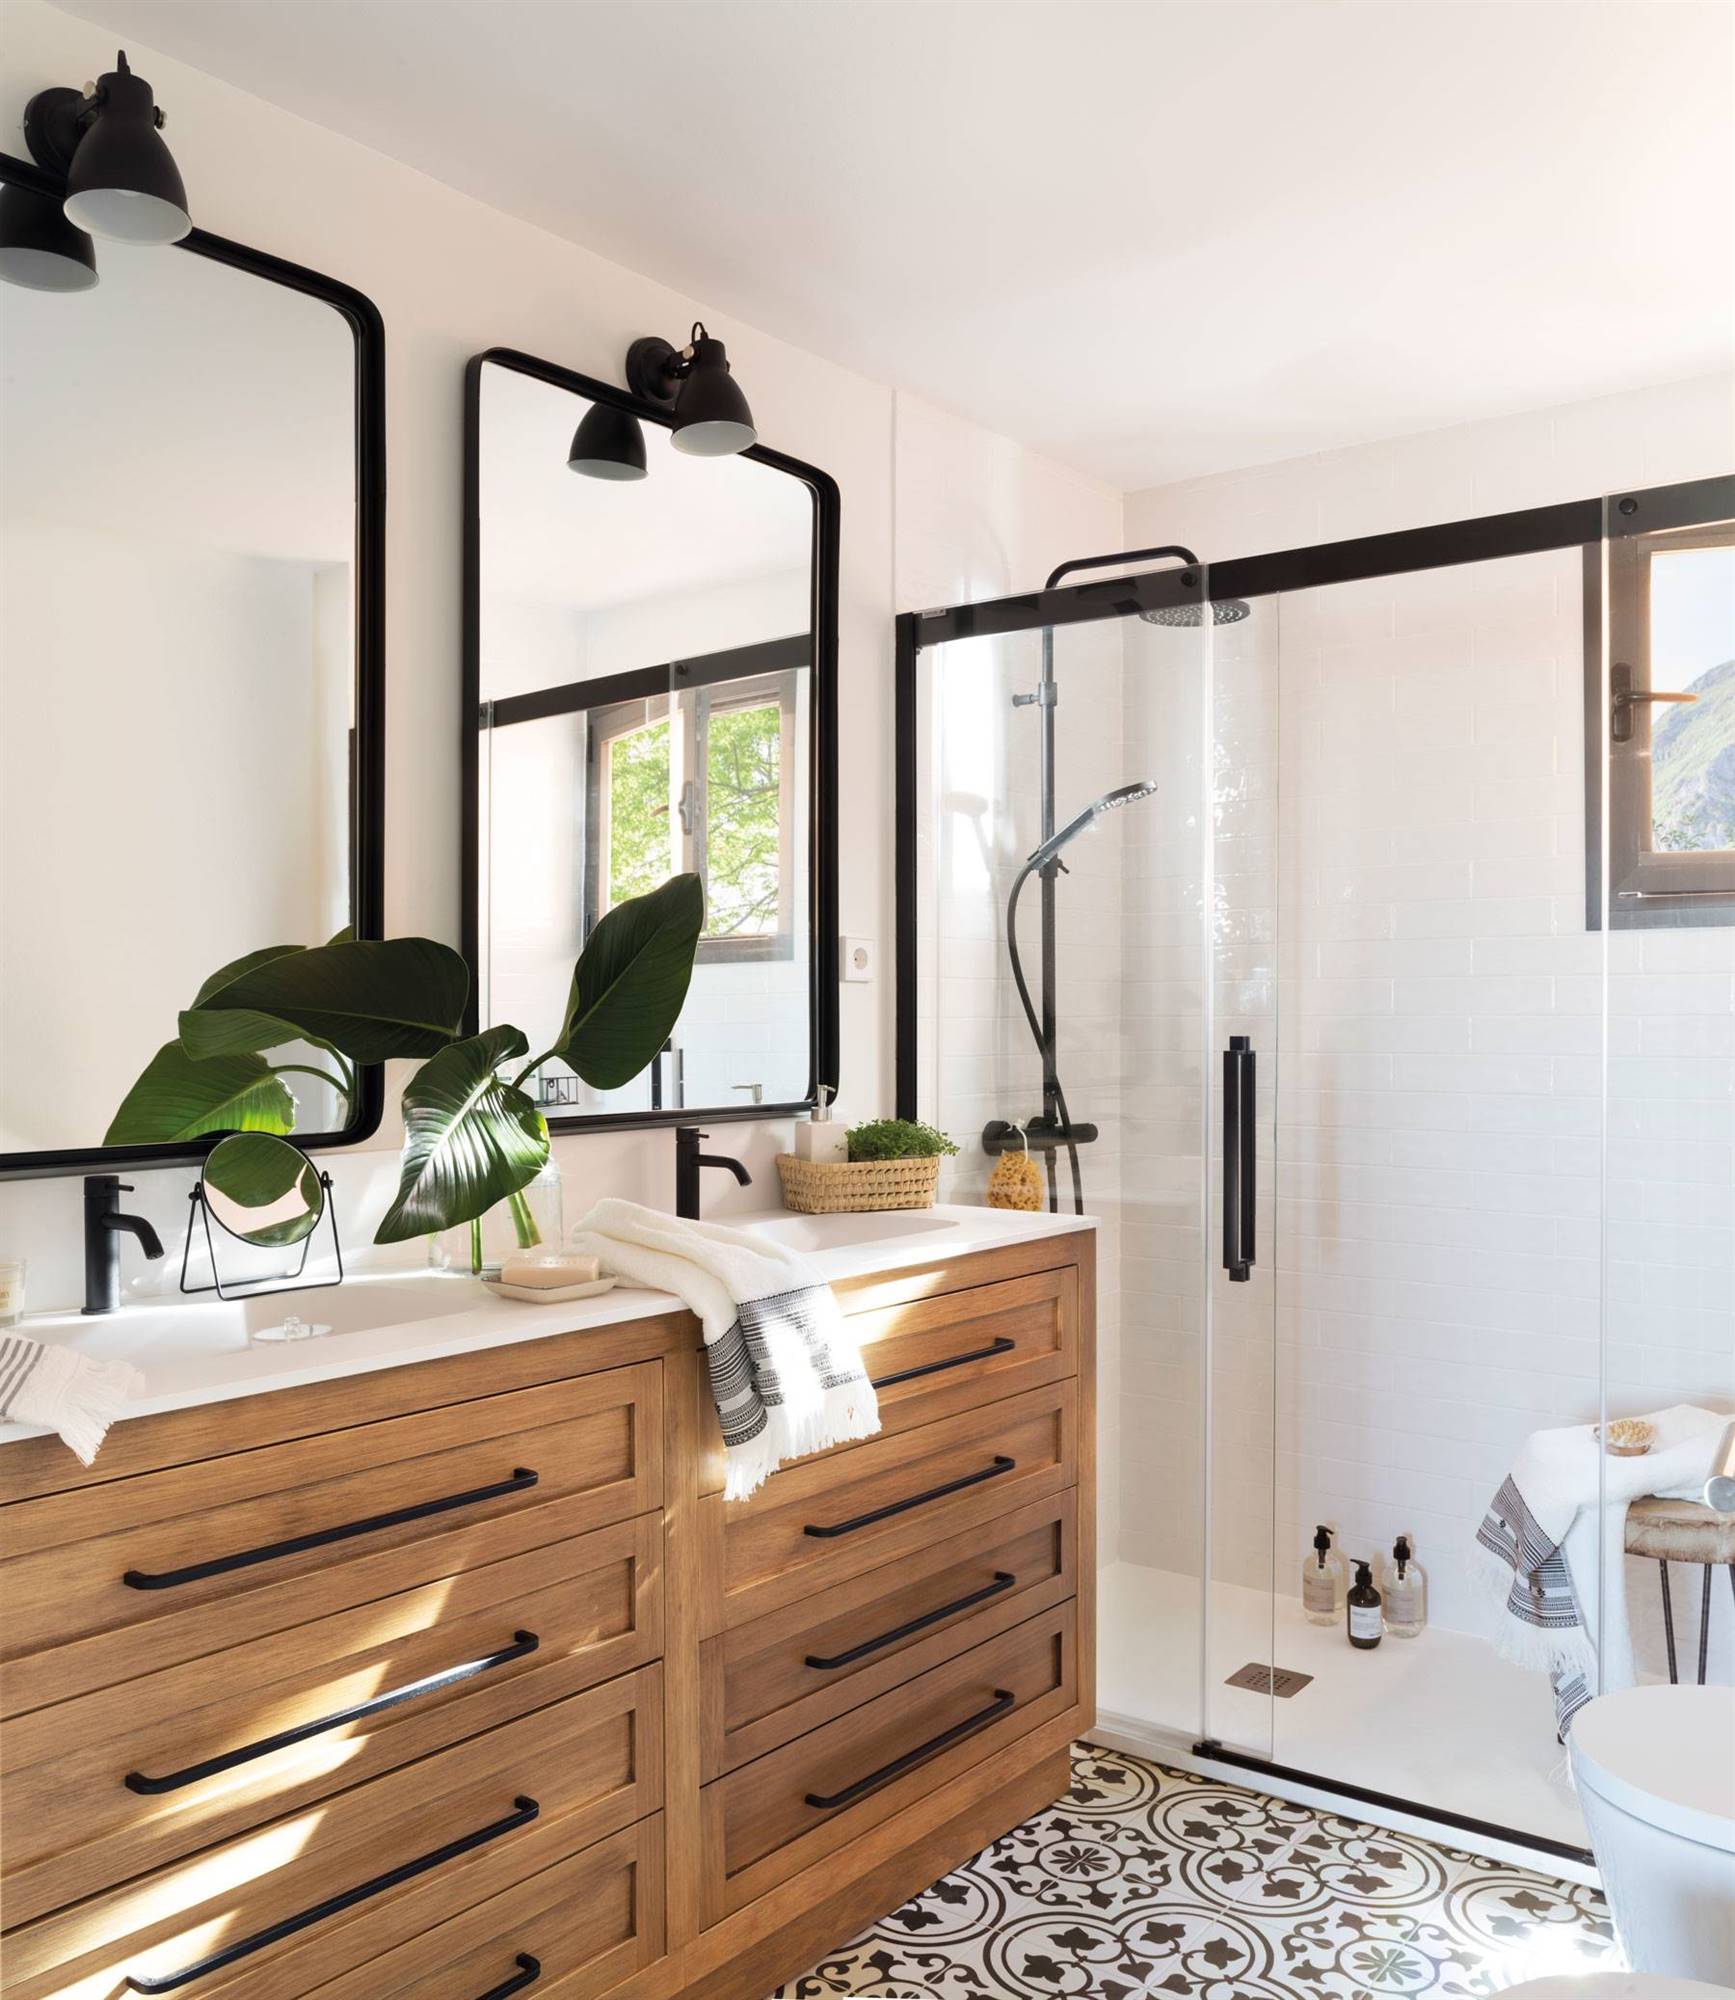 Baño con ducha, dos lavabos empotrados en un mueble de madera, suelo de baldosa hidráulica y espejos con marco metálico negro a juego con los grifos.